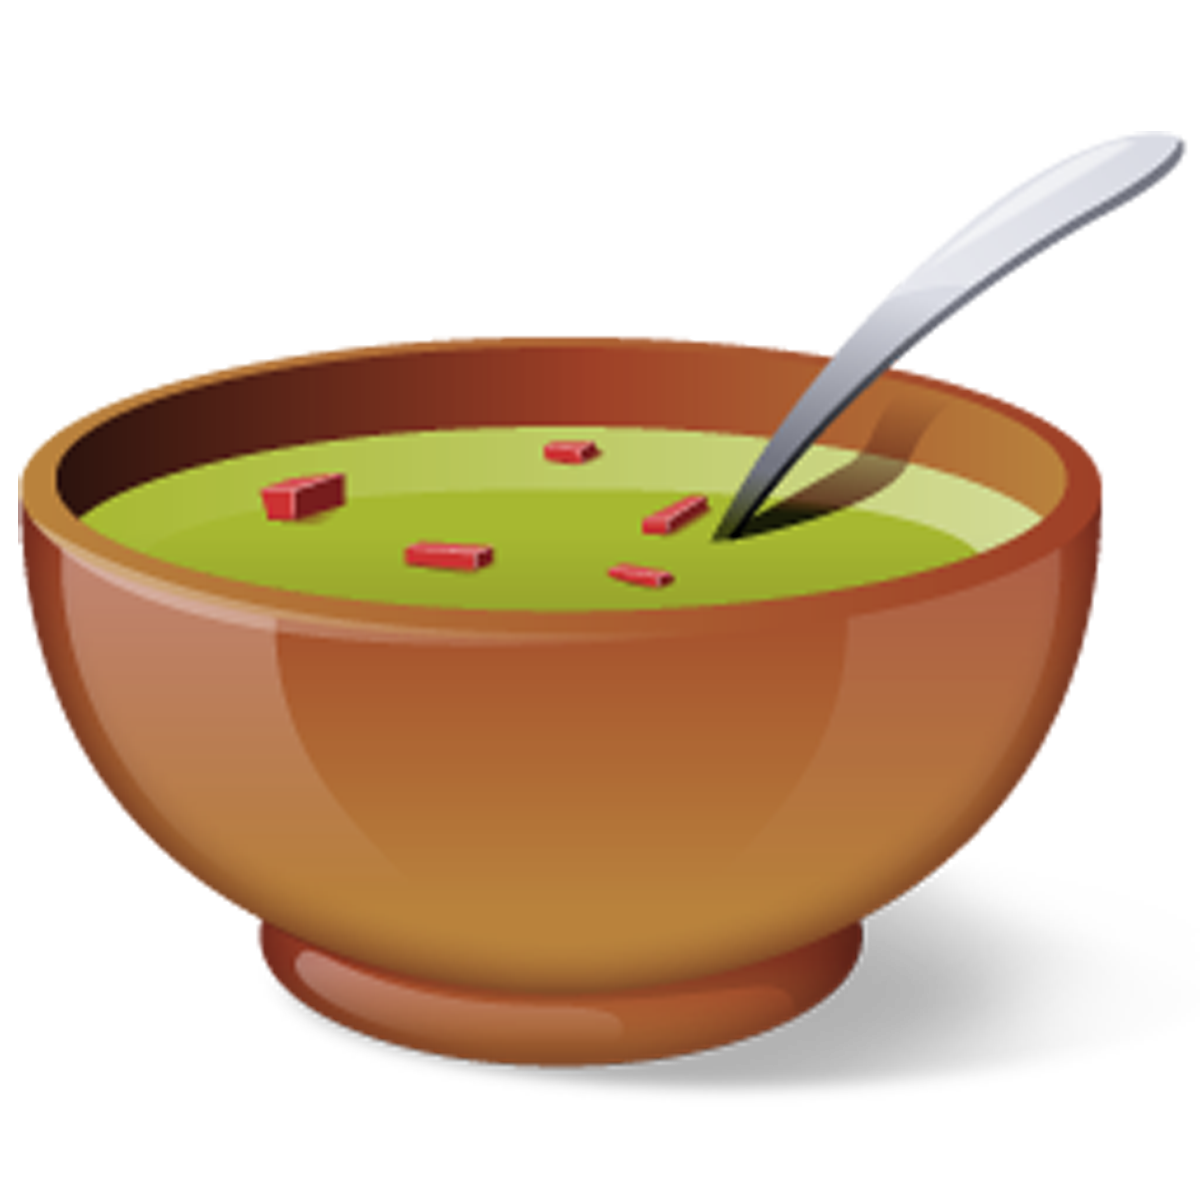 Moringa-recipe-Leaf-Korma